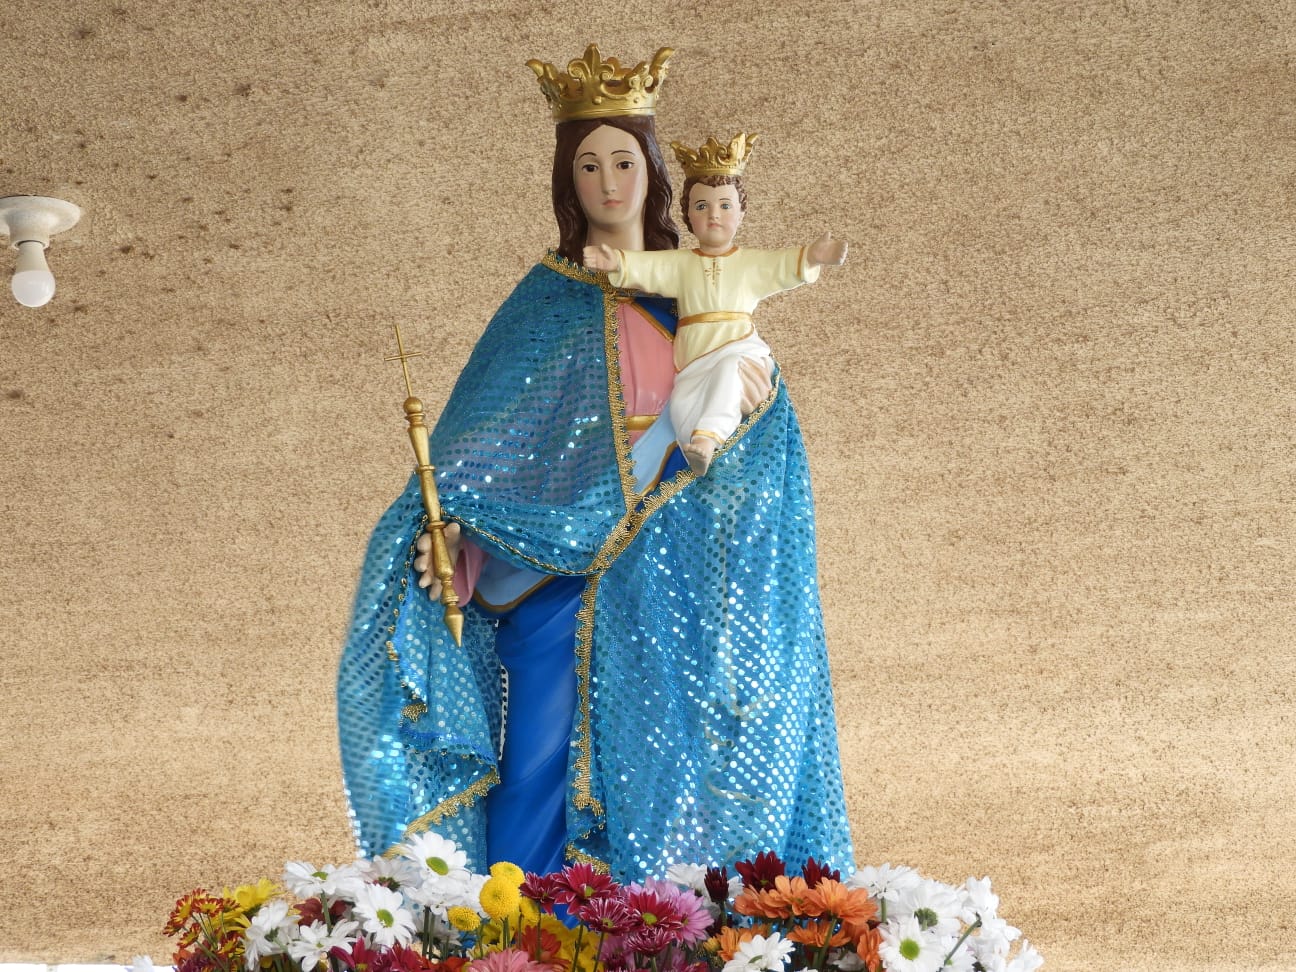 Paróquia Salesiana Nossa Senhora Auxiliadora realiza mais uma edição da festa religiosa e social da padroeira em Ponta Grossa/PR